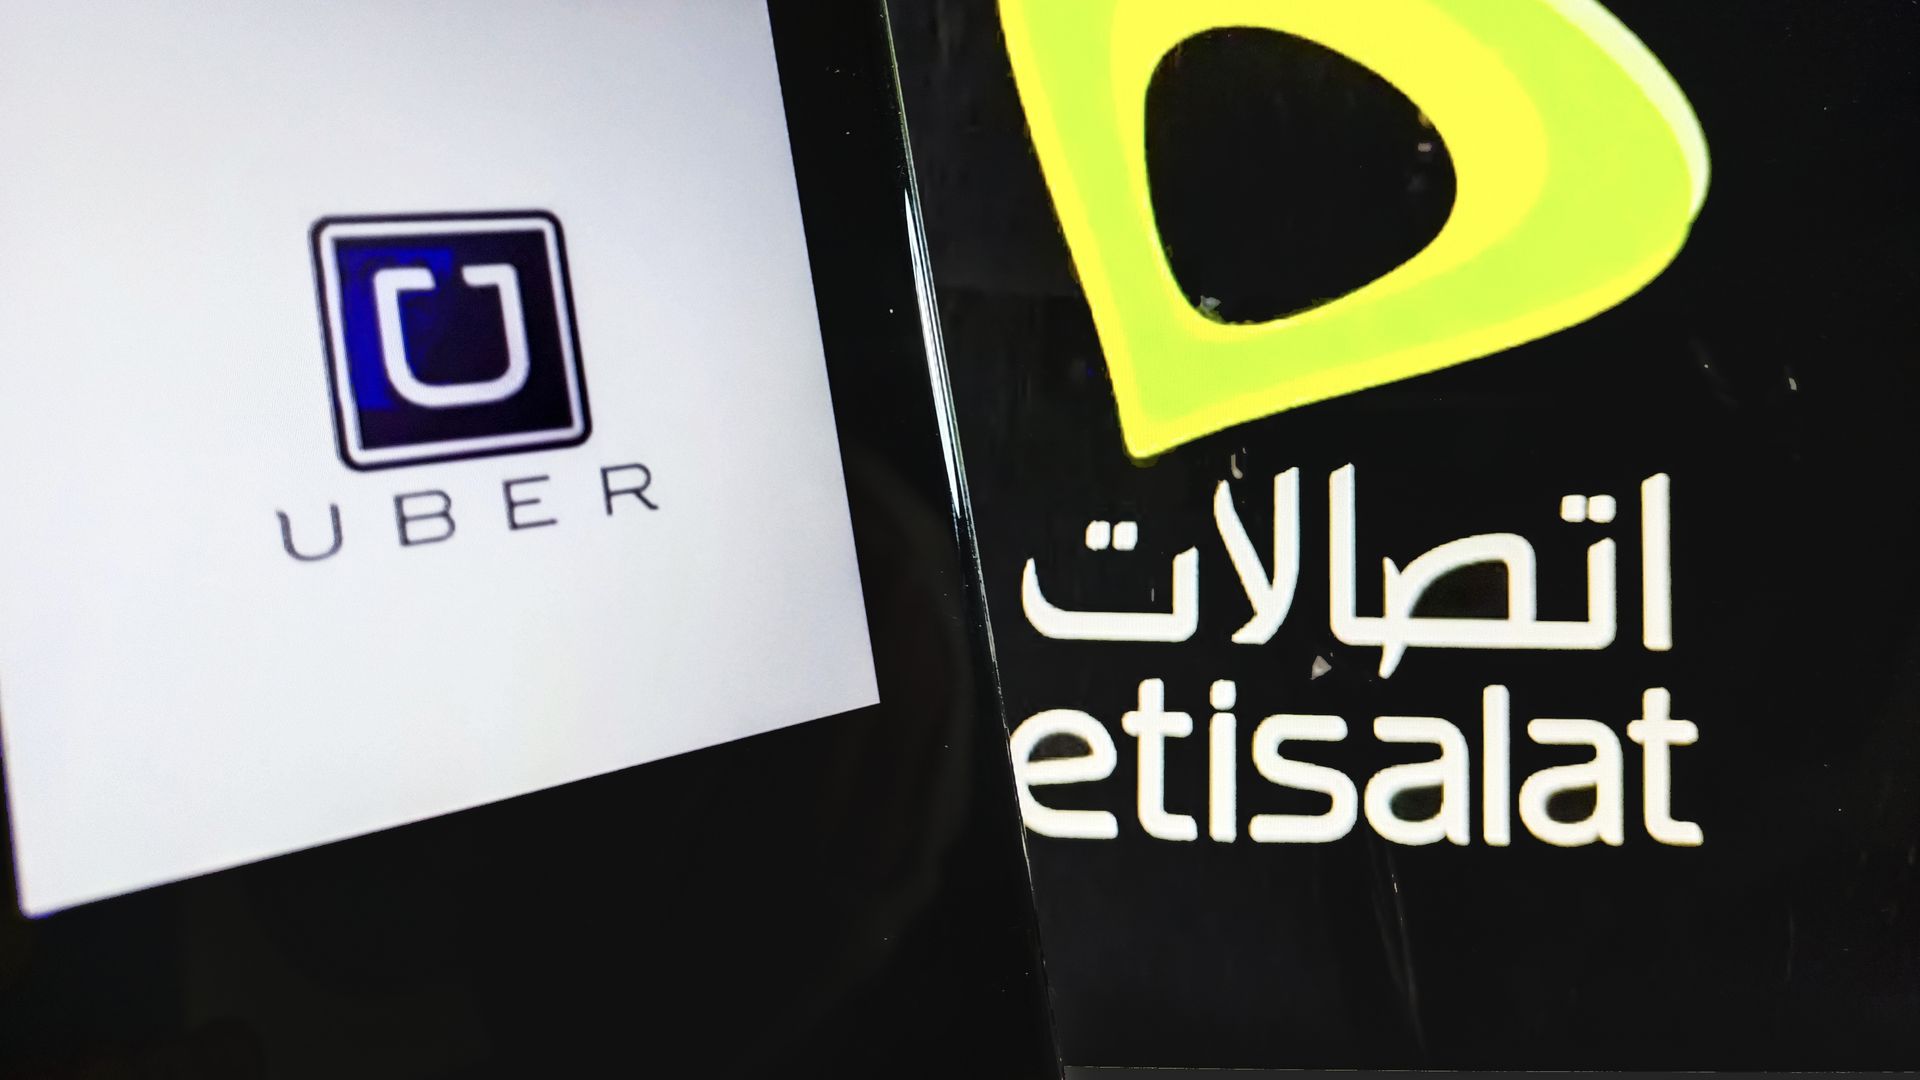 Logos of Uber and Etisalat.